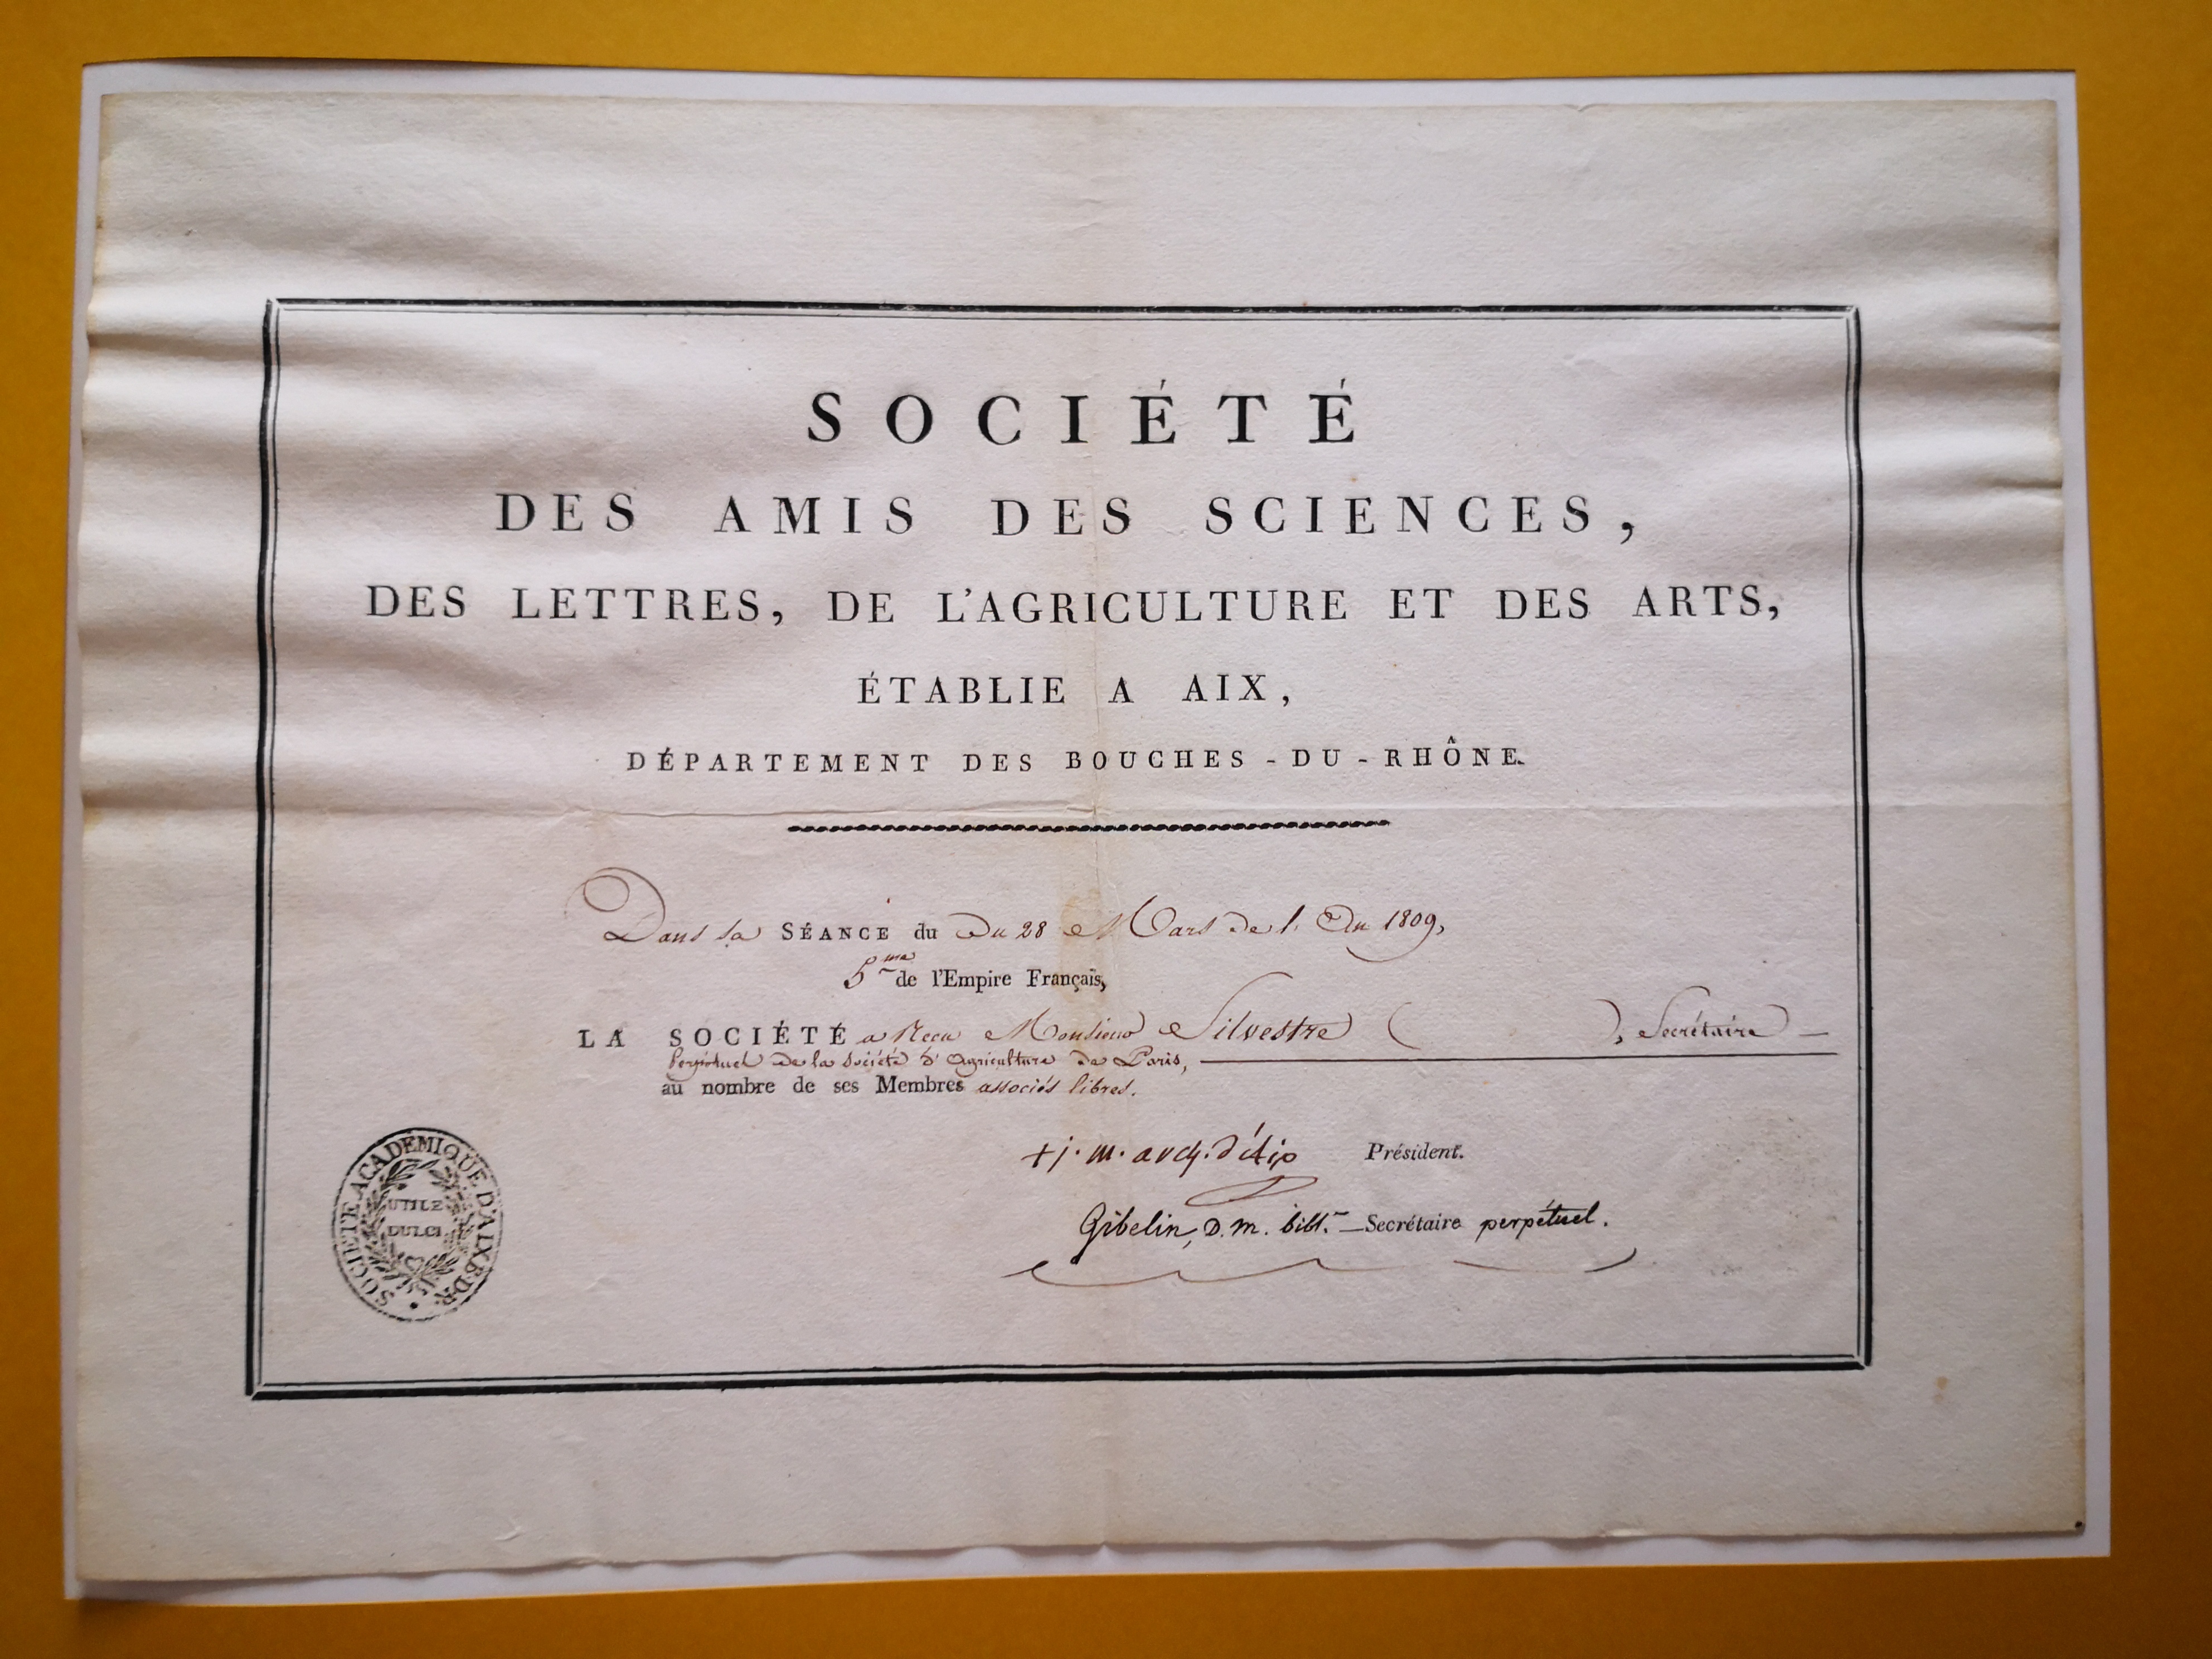  Diplôme de membre associé libre de la Société des Amis des Sciences, des Lettres, de l